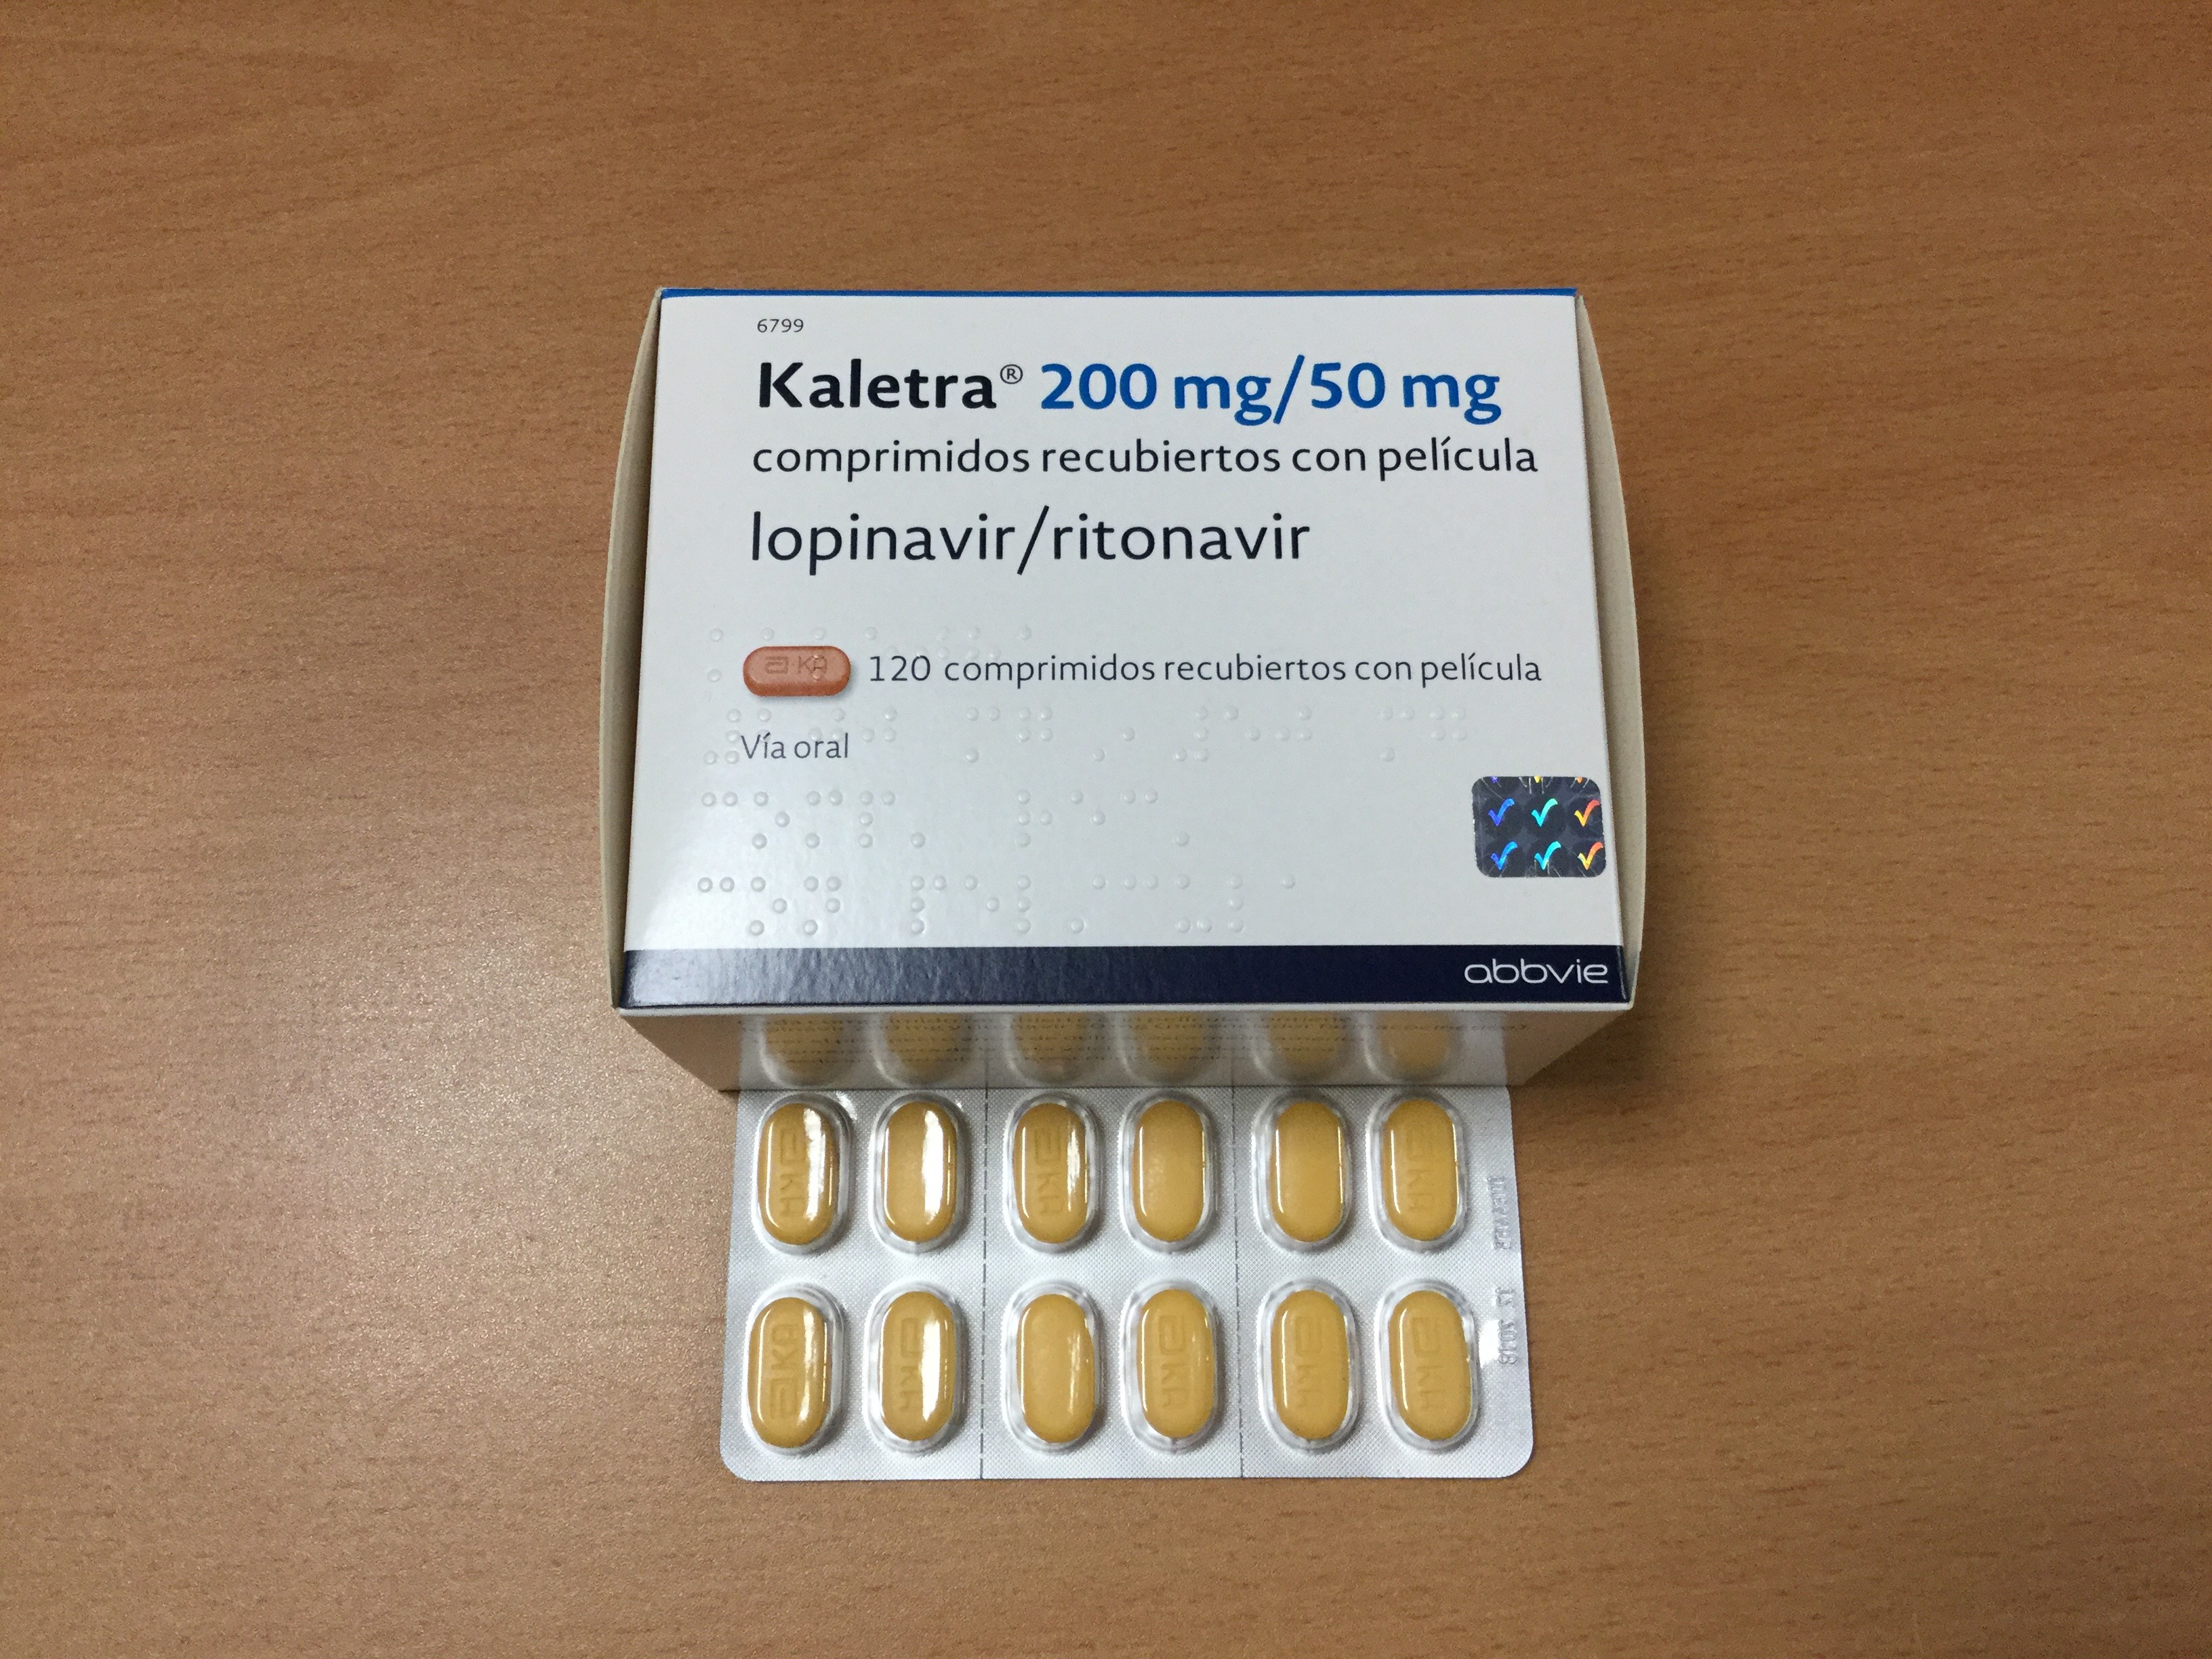 Kaletra: El lopinavir es un antirretroviral de la familia de los inhibidores de la proteasa. Se utiliza como subterapéutico junto con el ritonavir y la lamivudina en la terapia antirretroviral altamente supresiva para los pacientes infectados por VIH-1 y VIH-2.